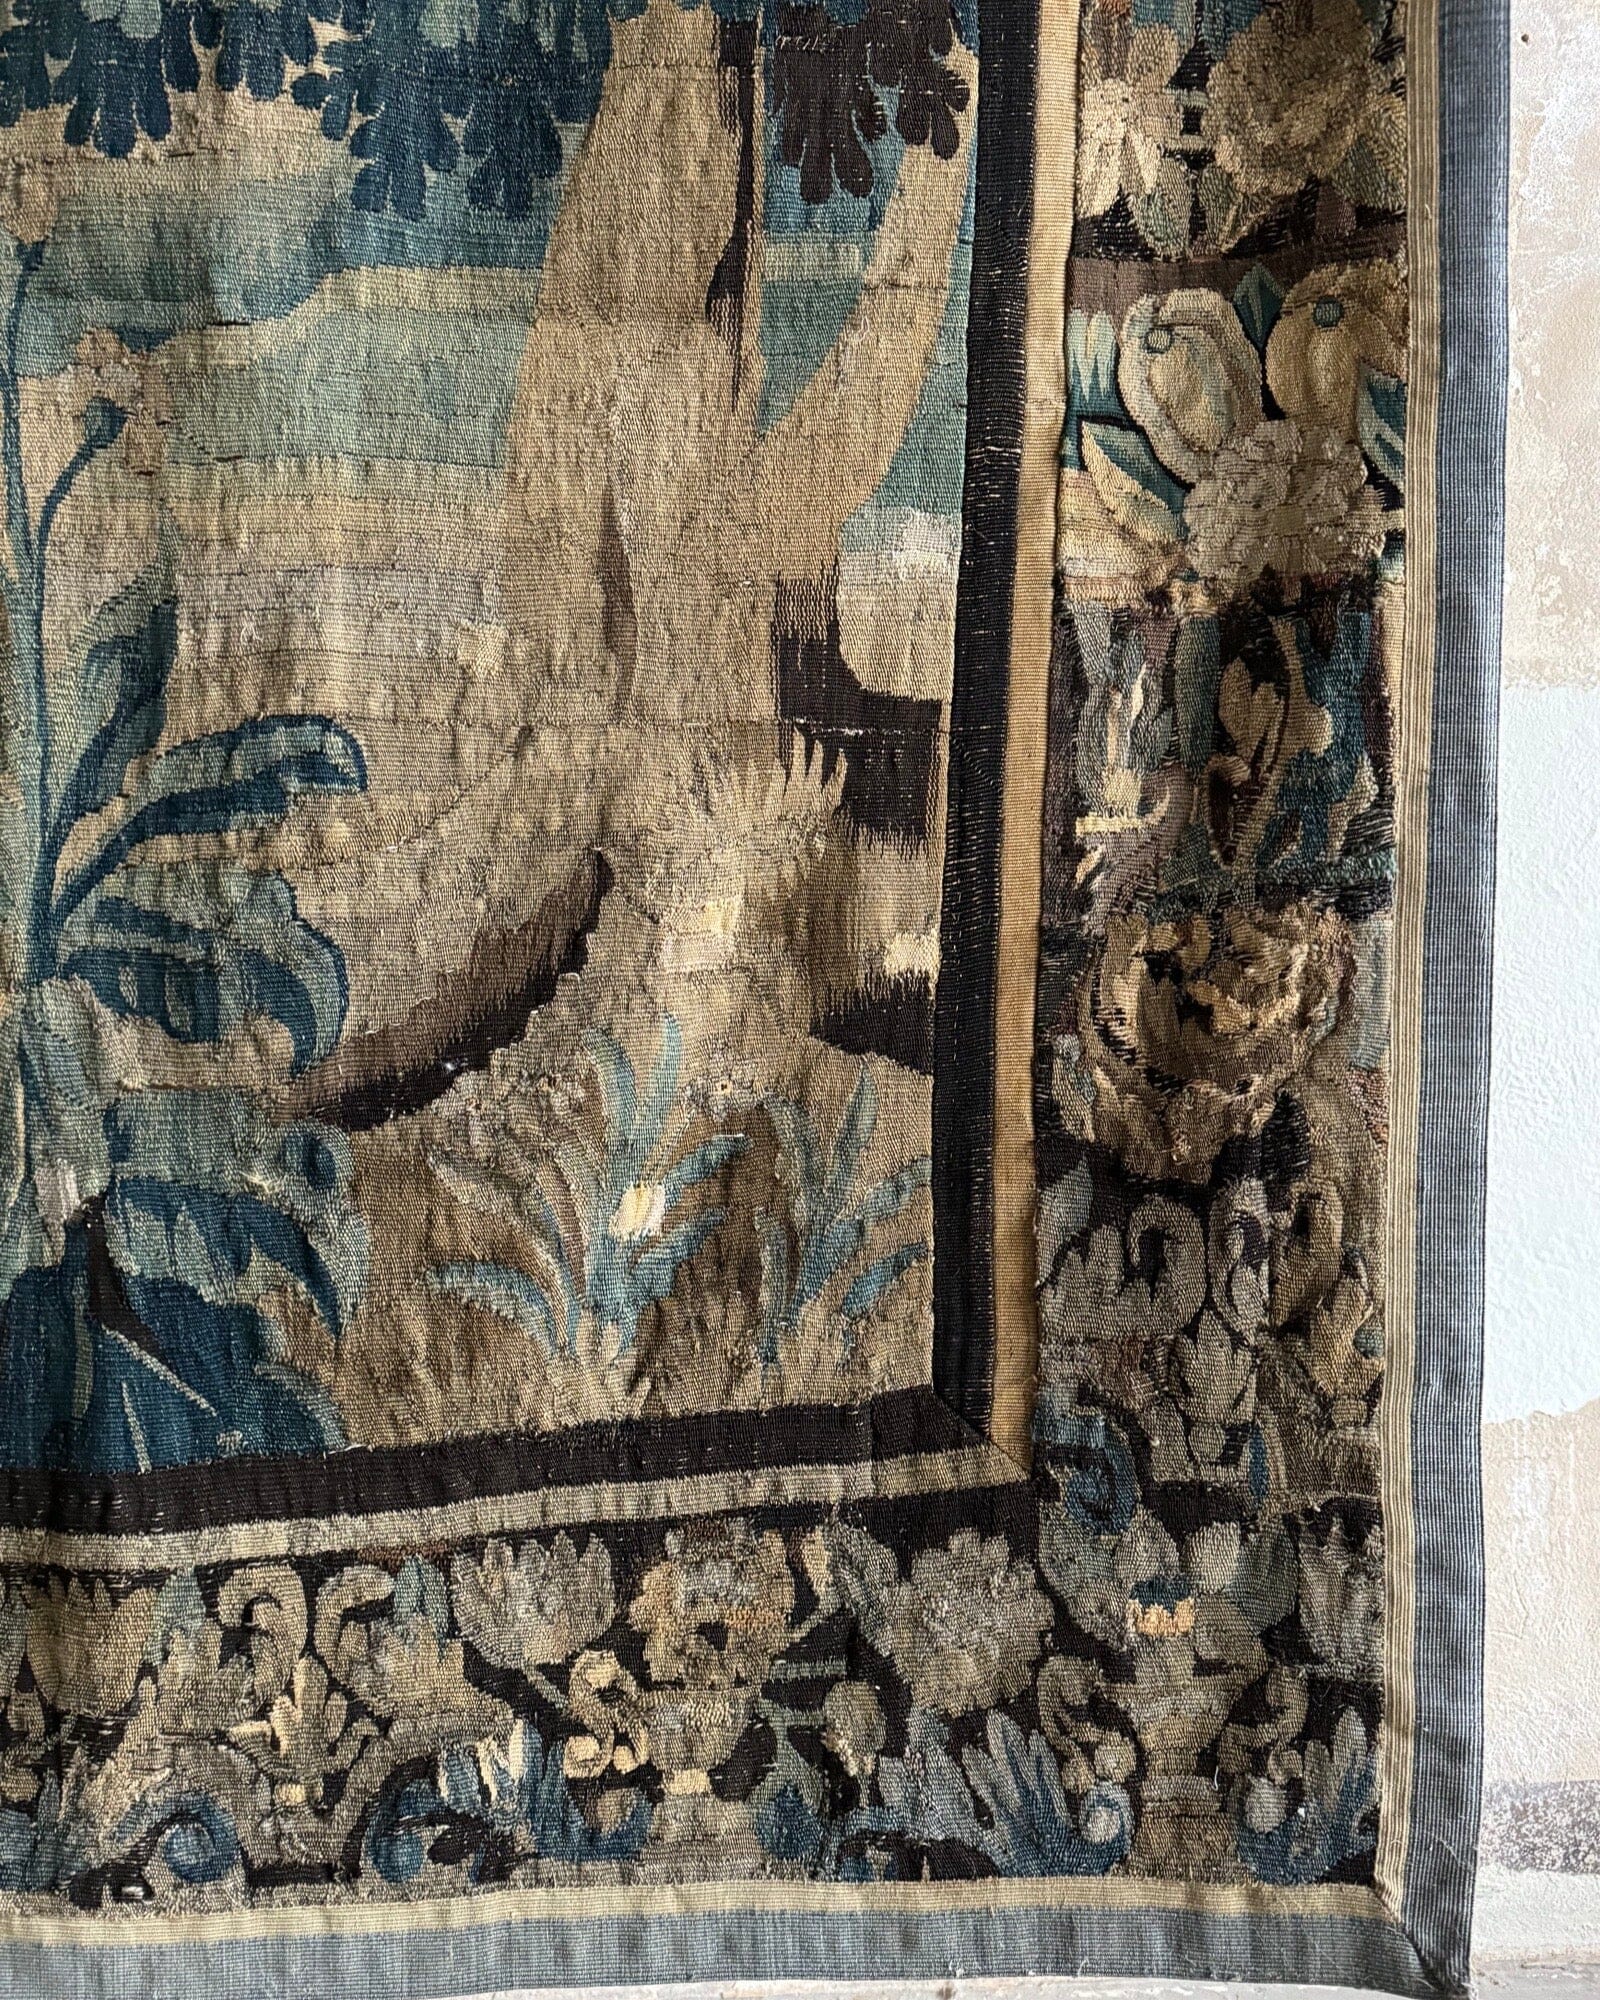 18th Century Verdure Tapestry (58 x 108